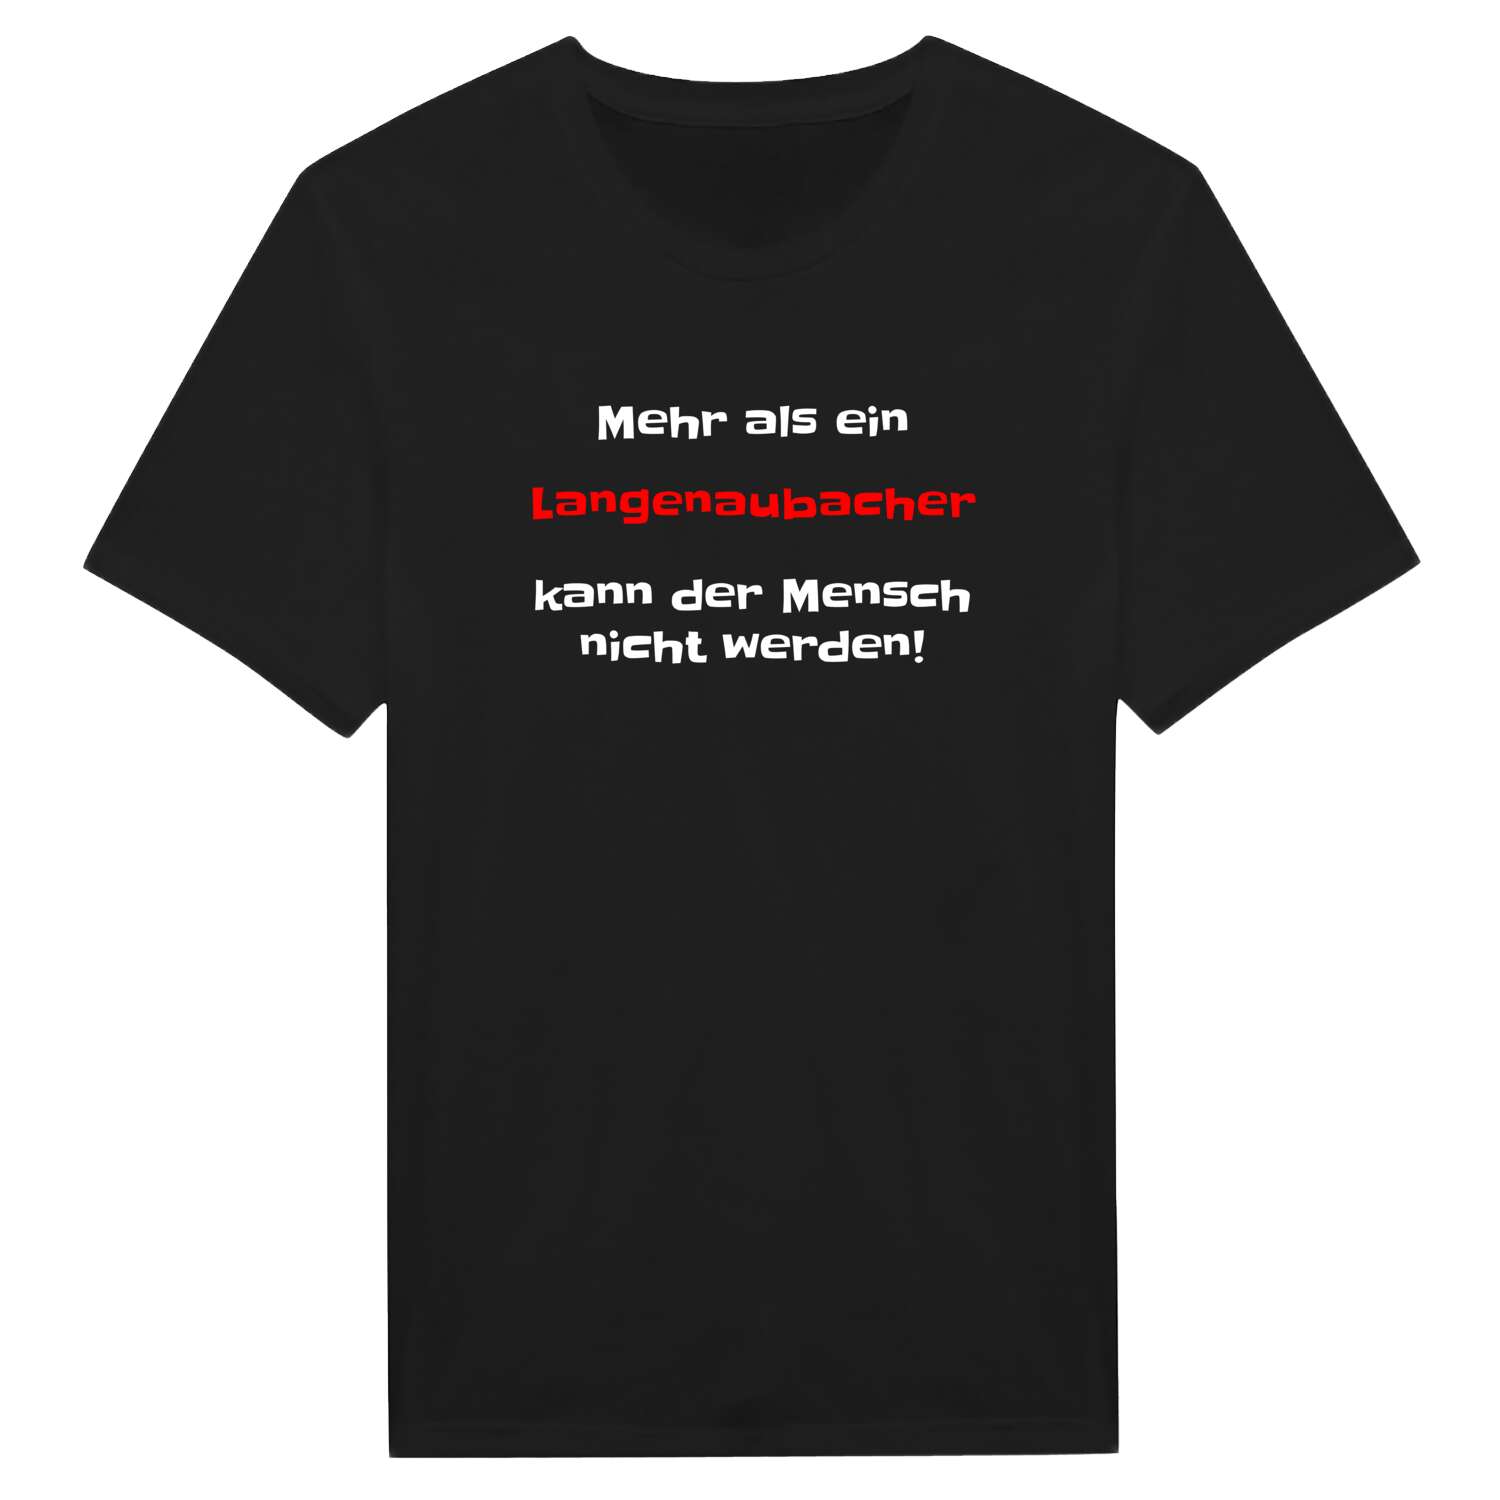 Langenaubach T-Shirt »Mehr als ein«